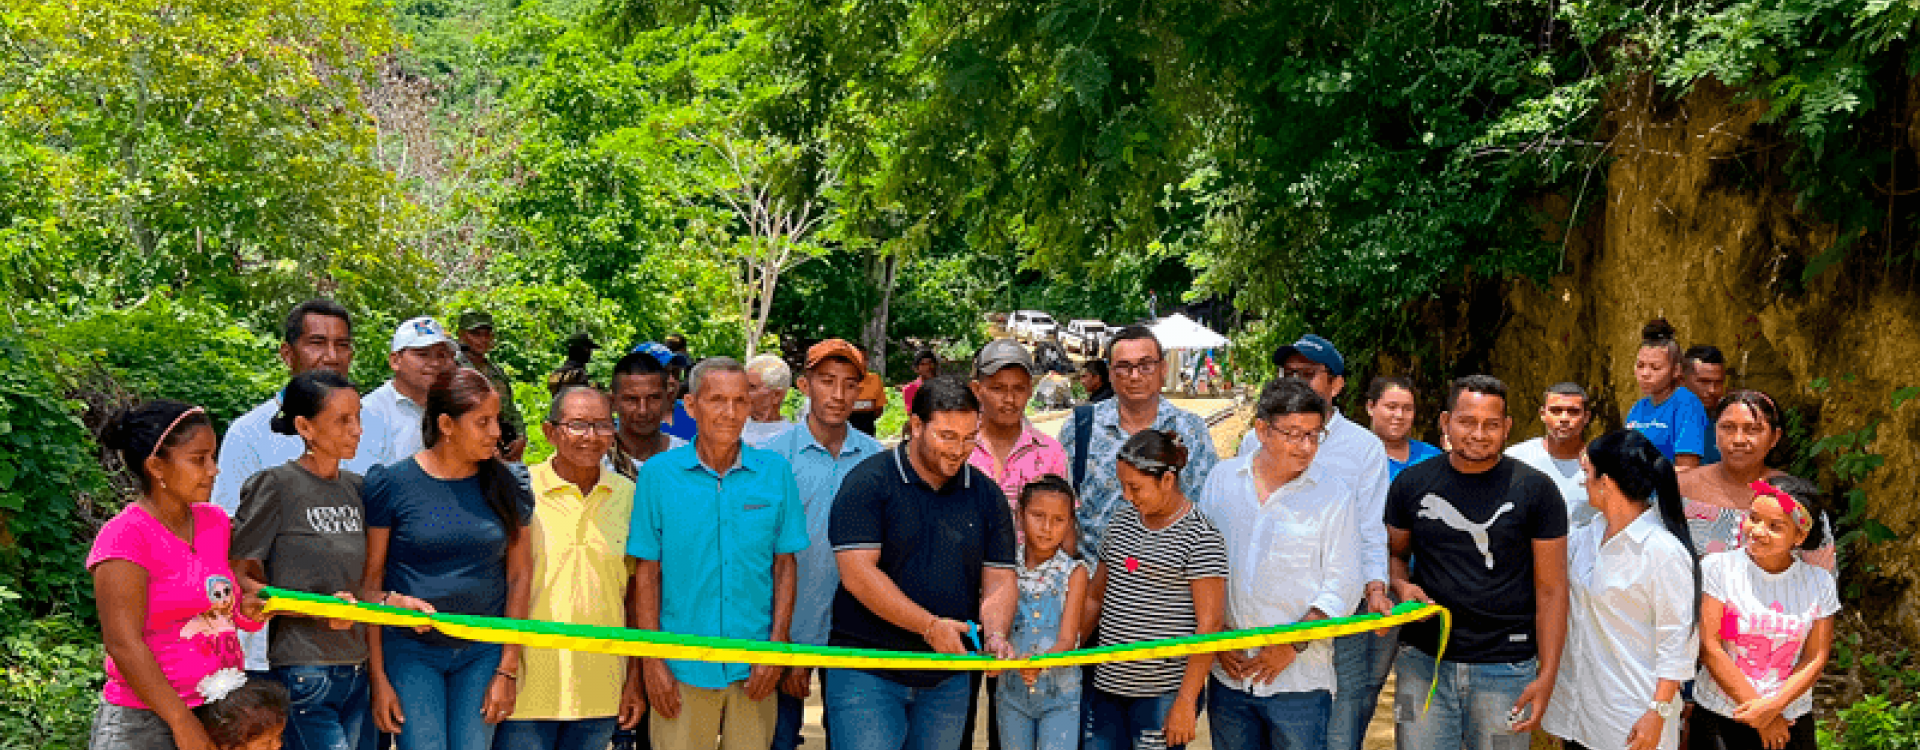 Nuevas vías que conectan territorios de paz en Ovejas, Sucre